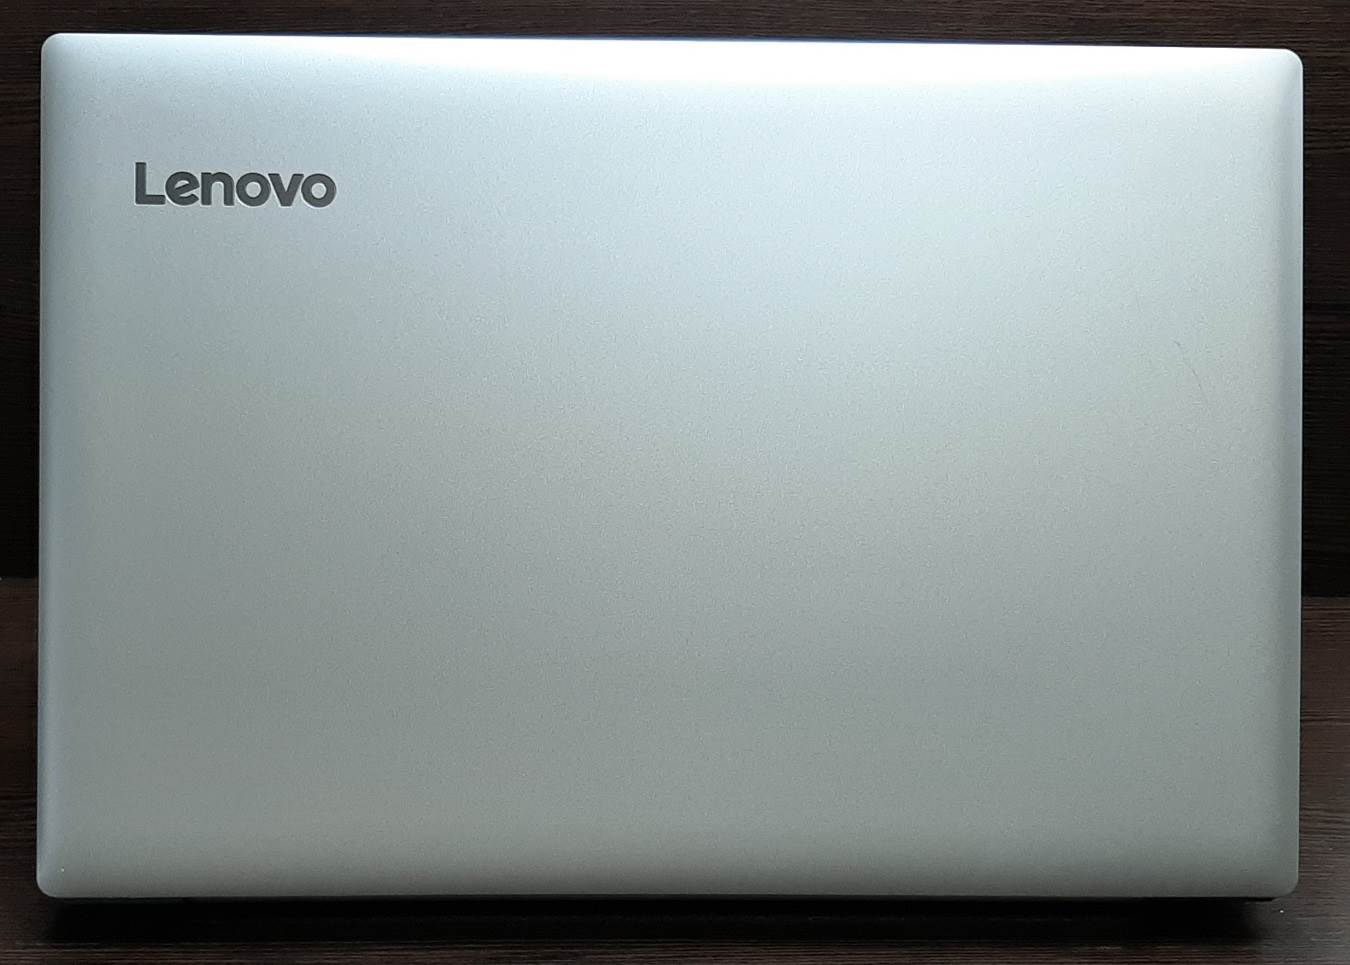 لپ تاپ استوک لنوو مدل Lenovo Ideapad 320 با مشخصات i5-8gen-8GB-1TB-HDD-2GB-nVidia-MX150